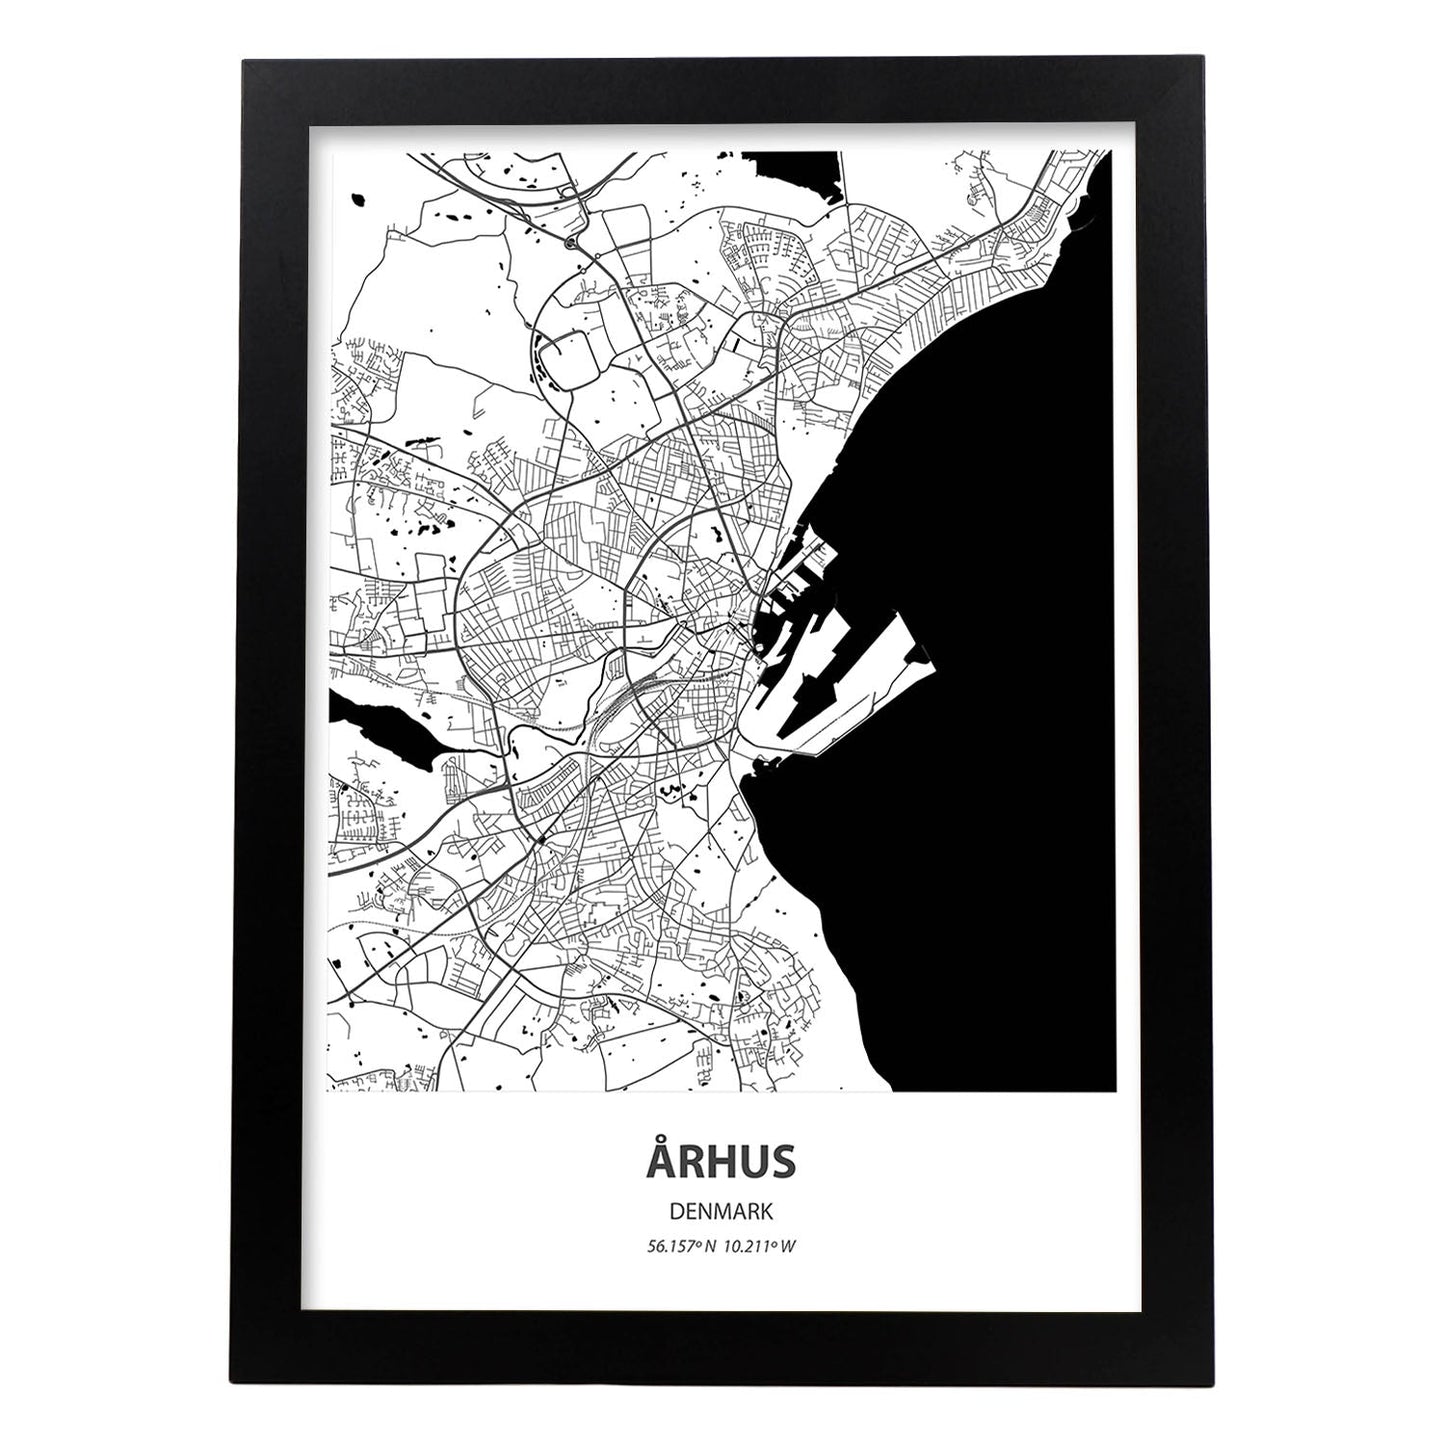 Poster con mapa de Arhus - Dinamarca. Láminas de ciudades del norte de Europa con mares y ríos en color negro.-Artwork-Nacnic-A3-Marco Negro-Nacnic Estudio SL